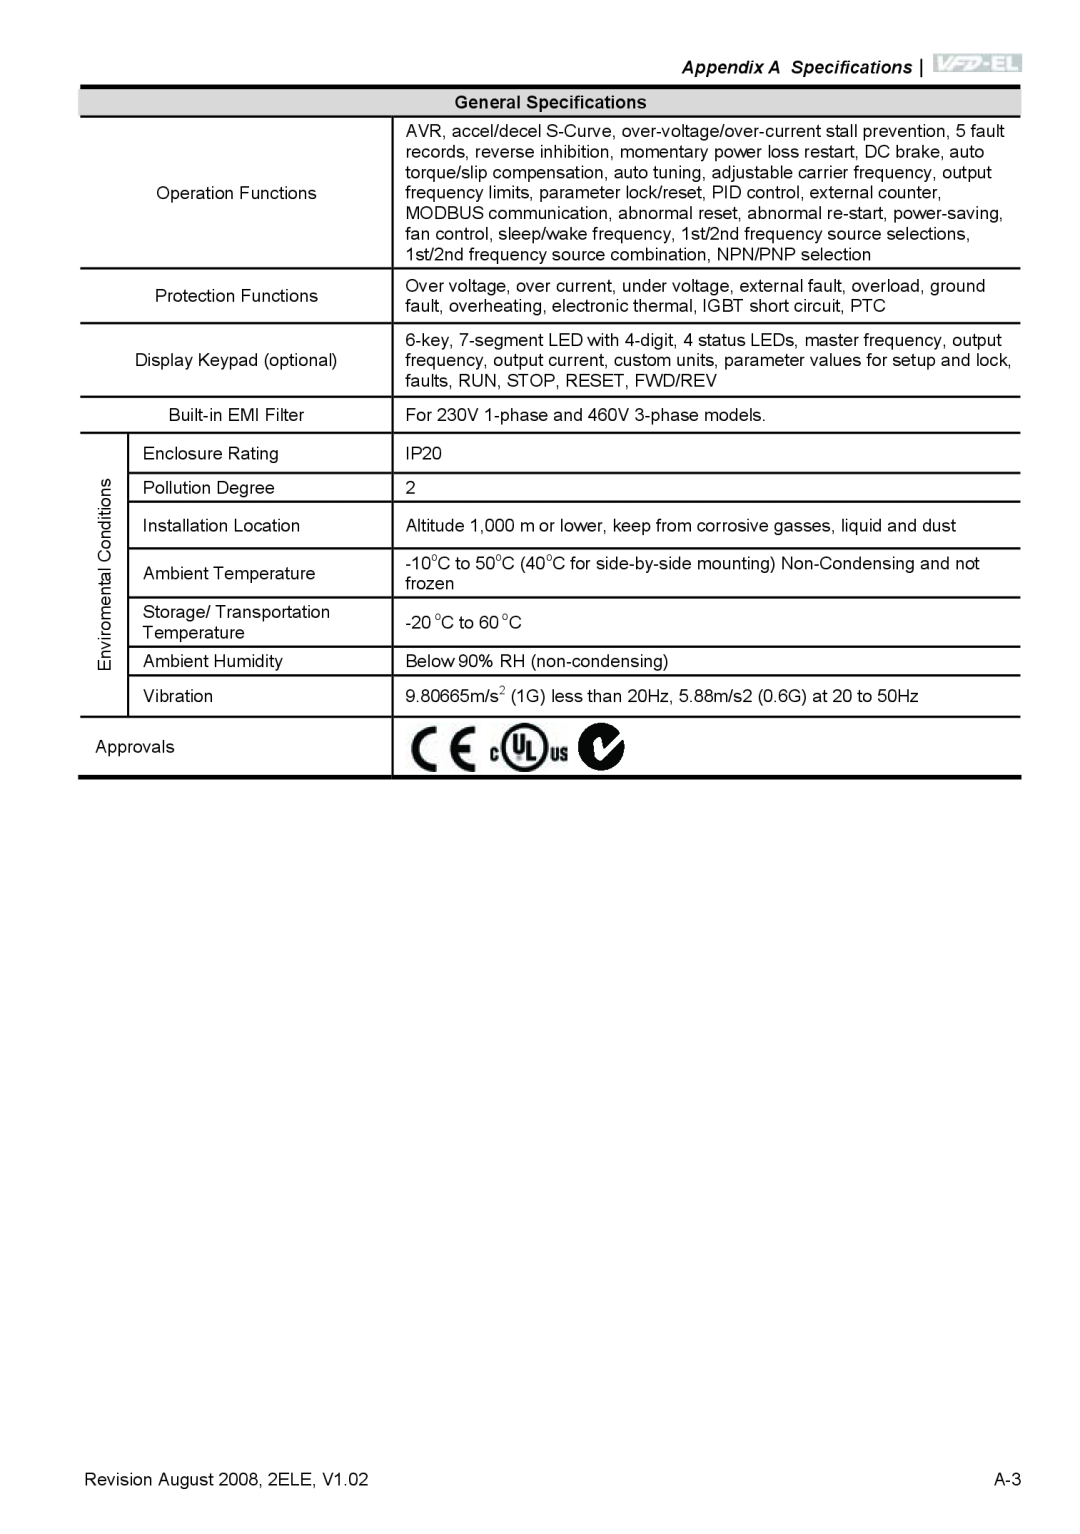 Delta Electronics VFD-EL manual Appendix A Specifications, General Specifications, Enviromental 